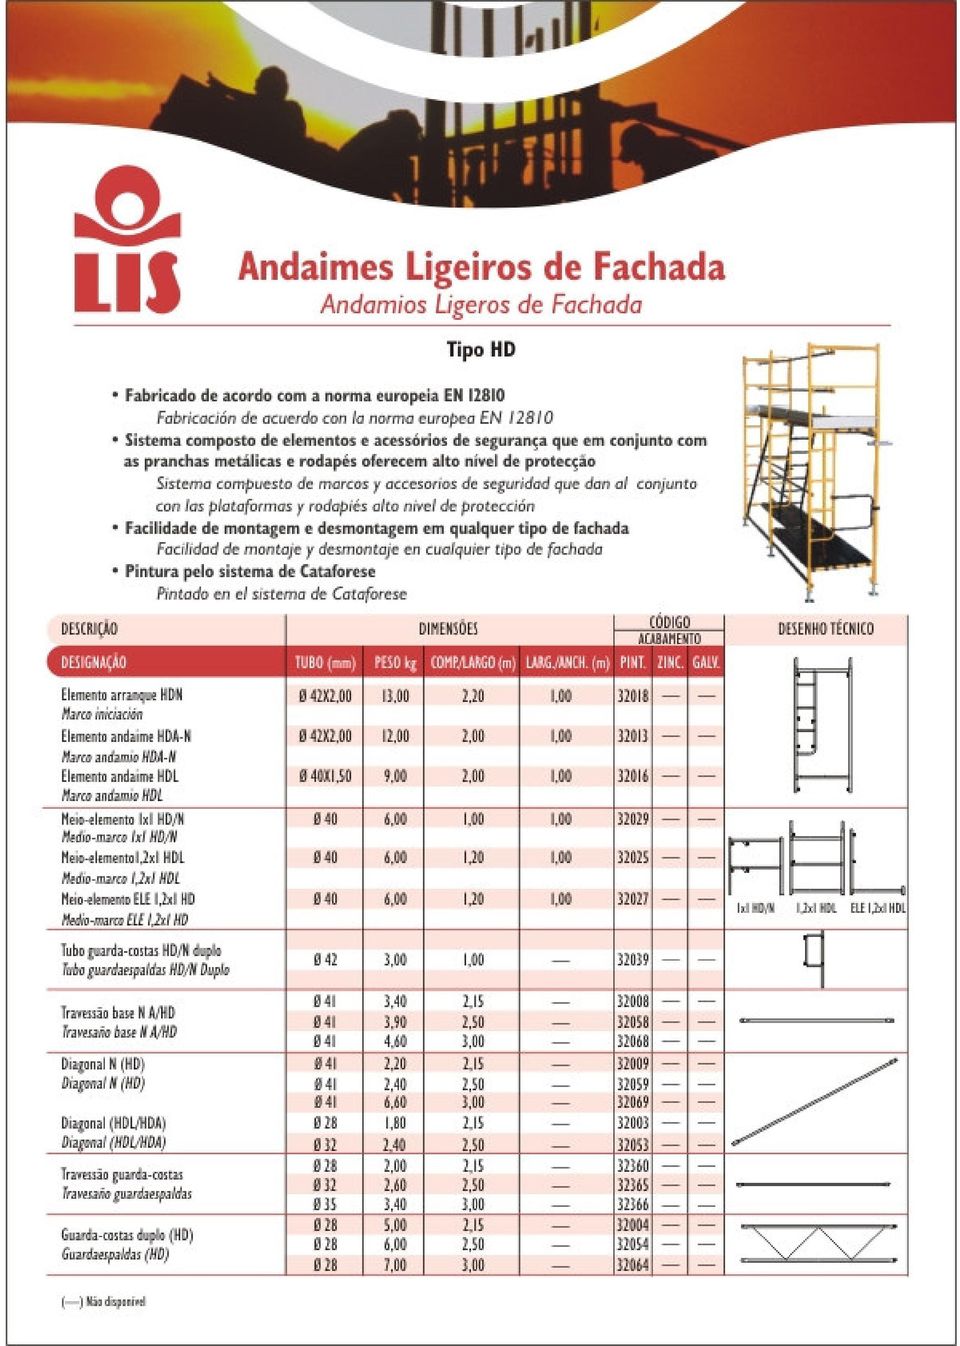 Andaimes de Fachada Andamios de Fachada - PDF Free Download